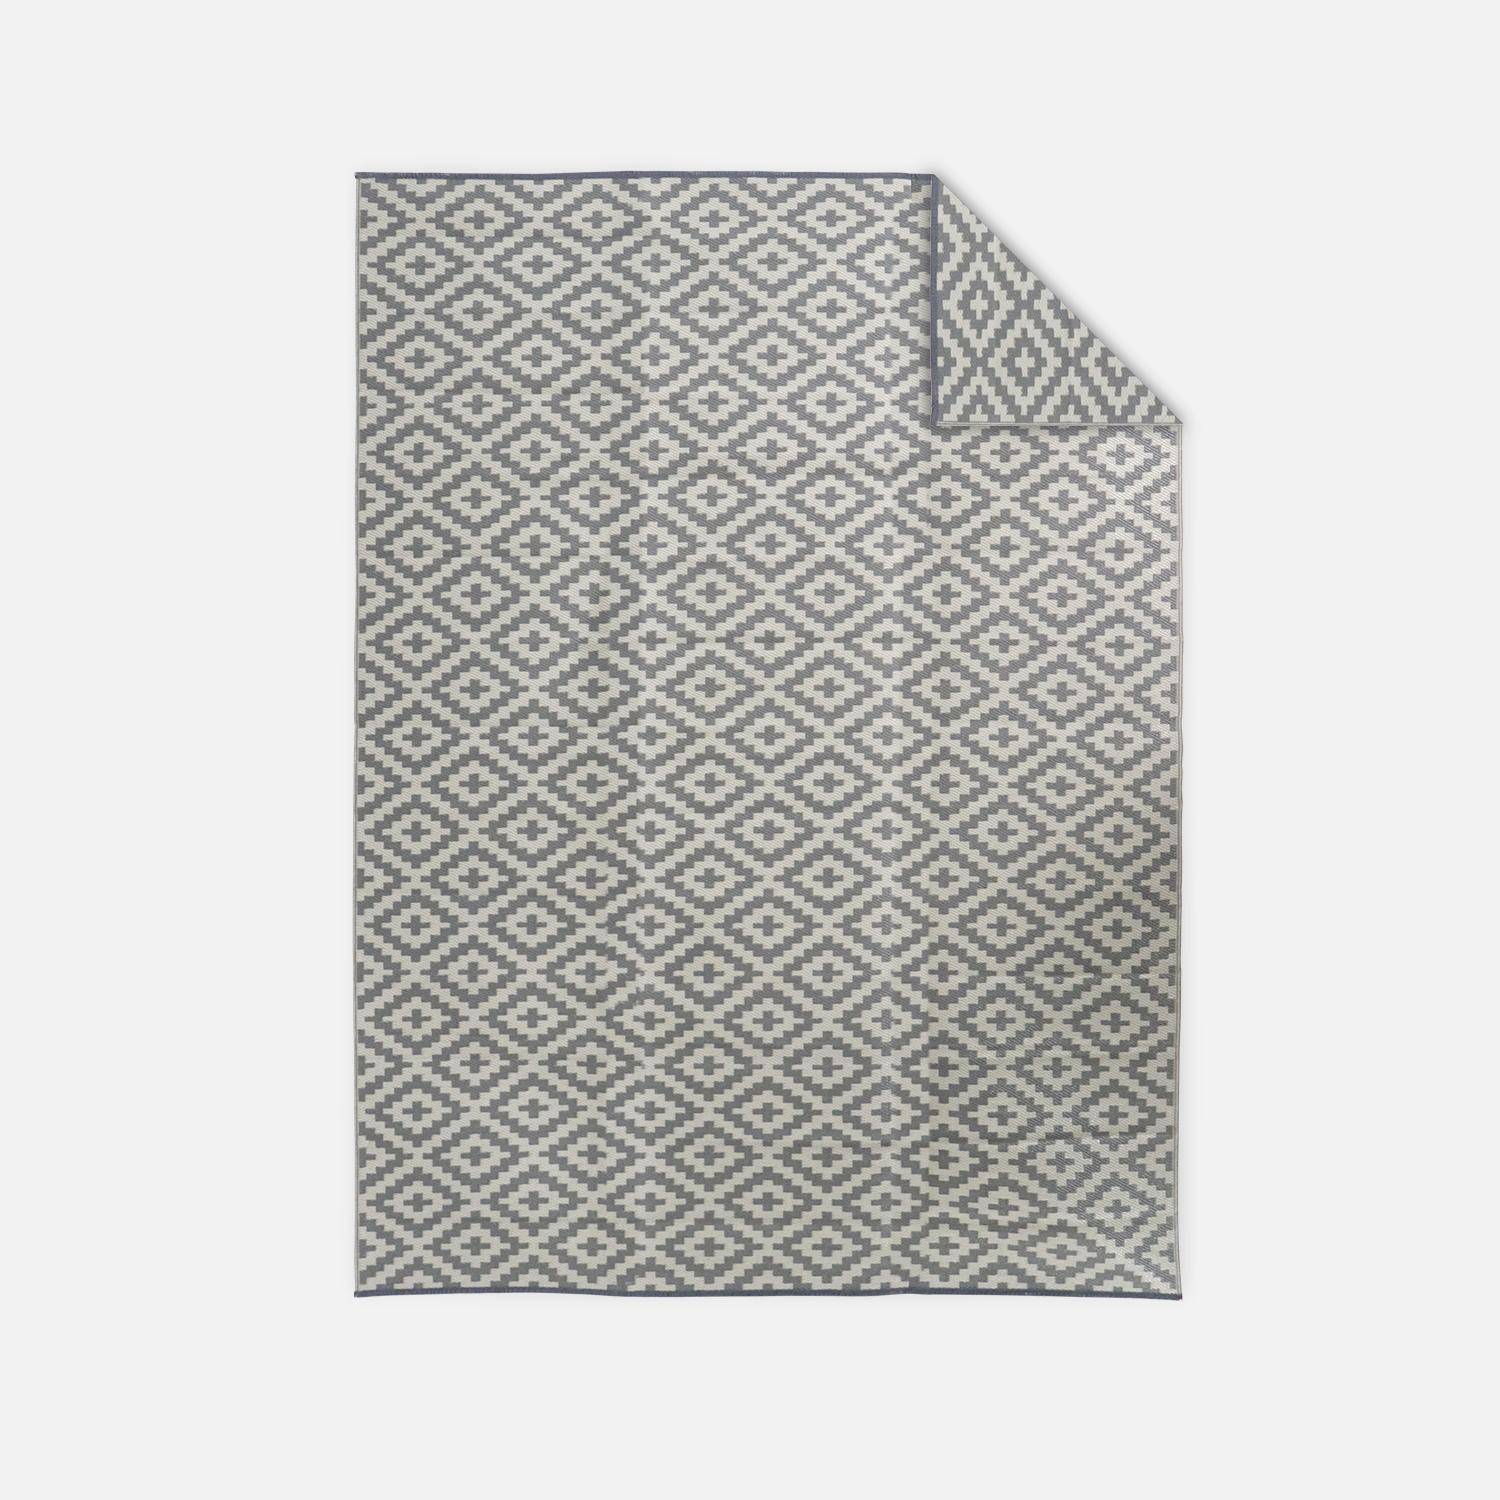 Tapete de exterior 270x360cm STOCKHOLM - Retangular, padrão de diamante caqui, jacquard, reversível, interior / exterior,,sweeek,Photo1